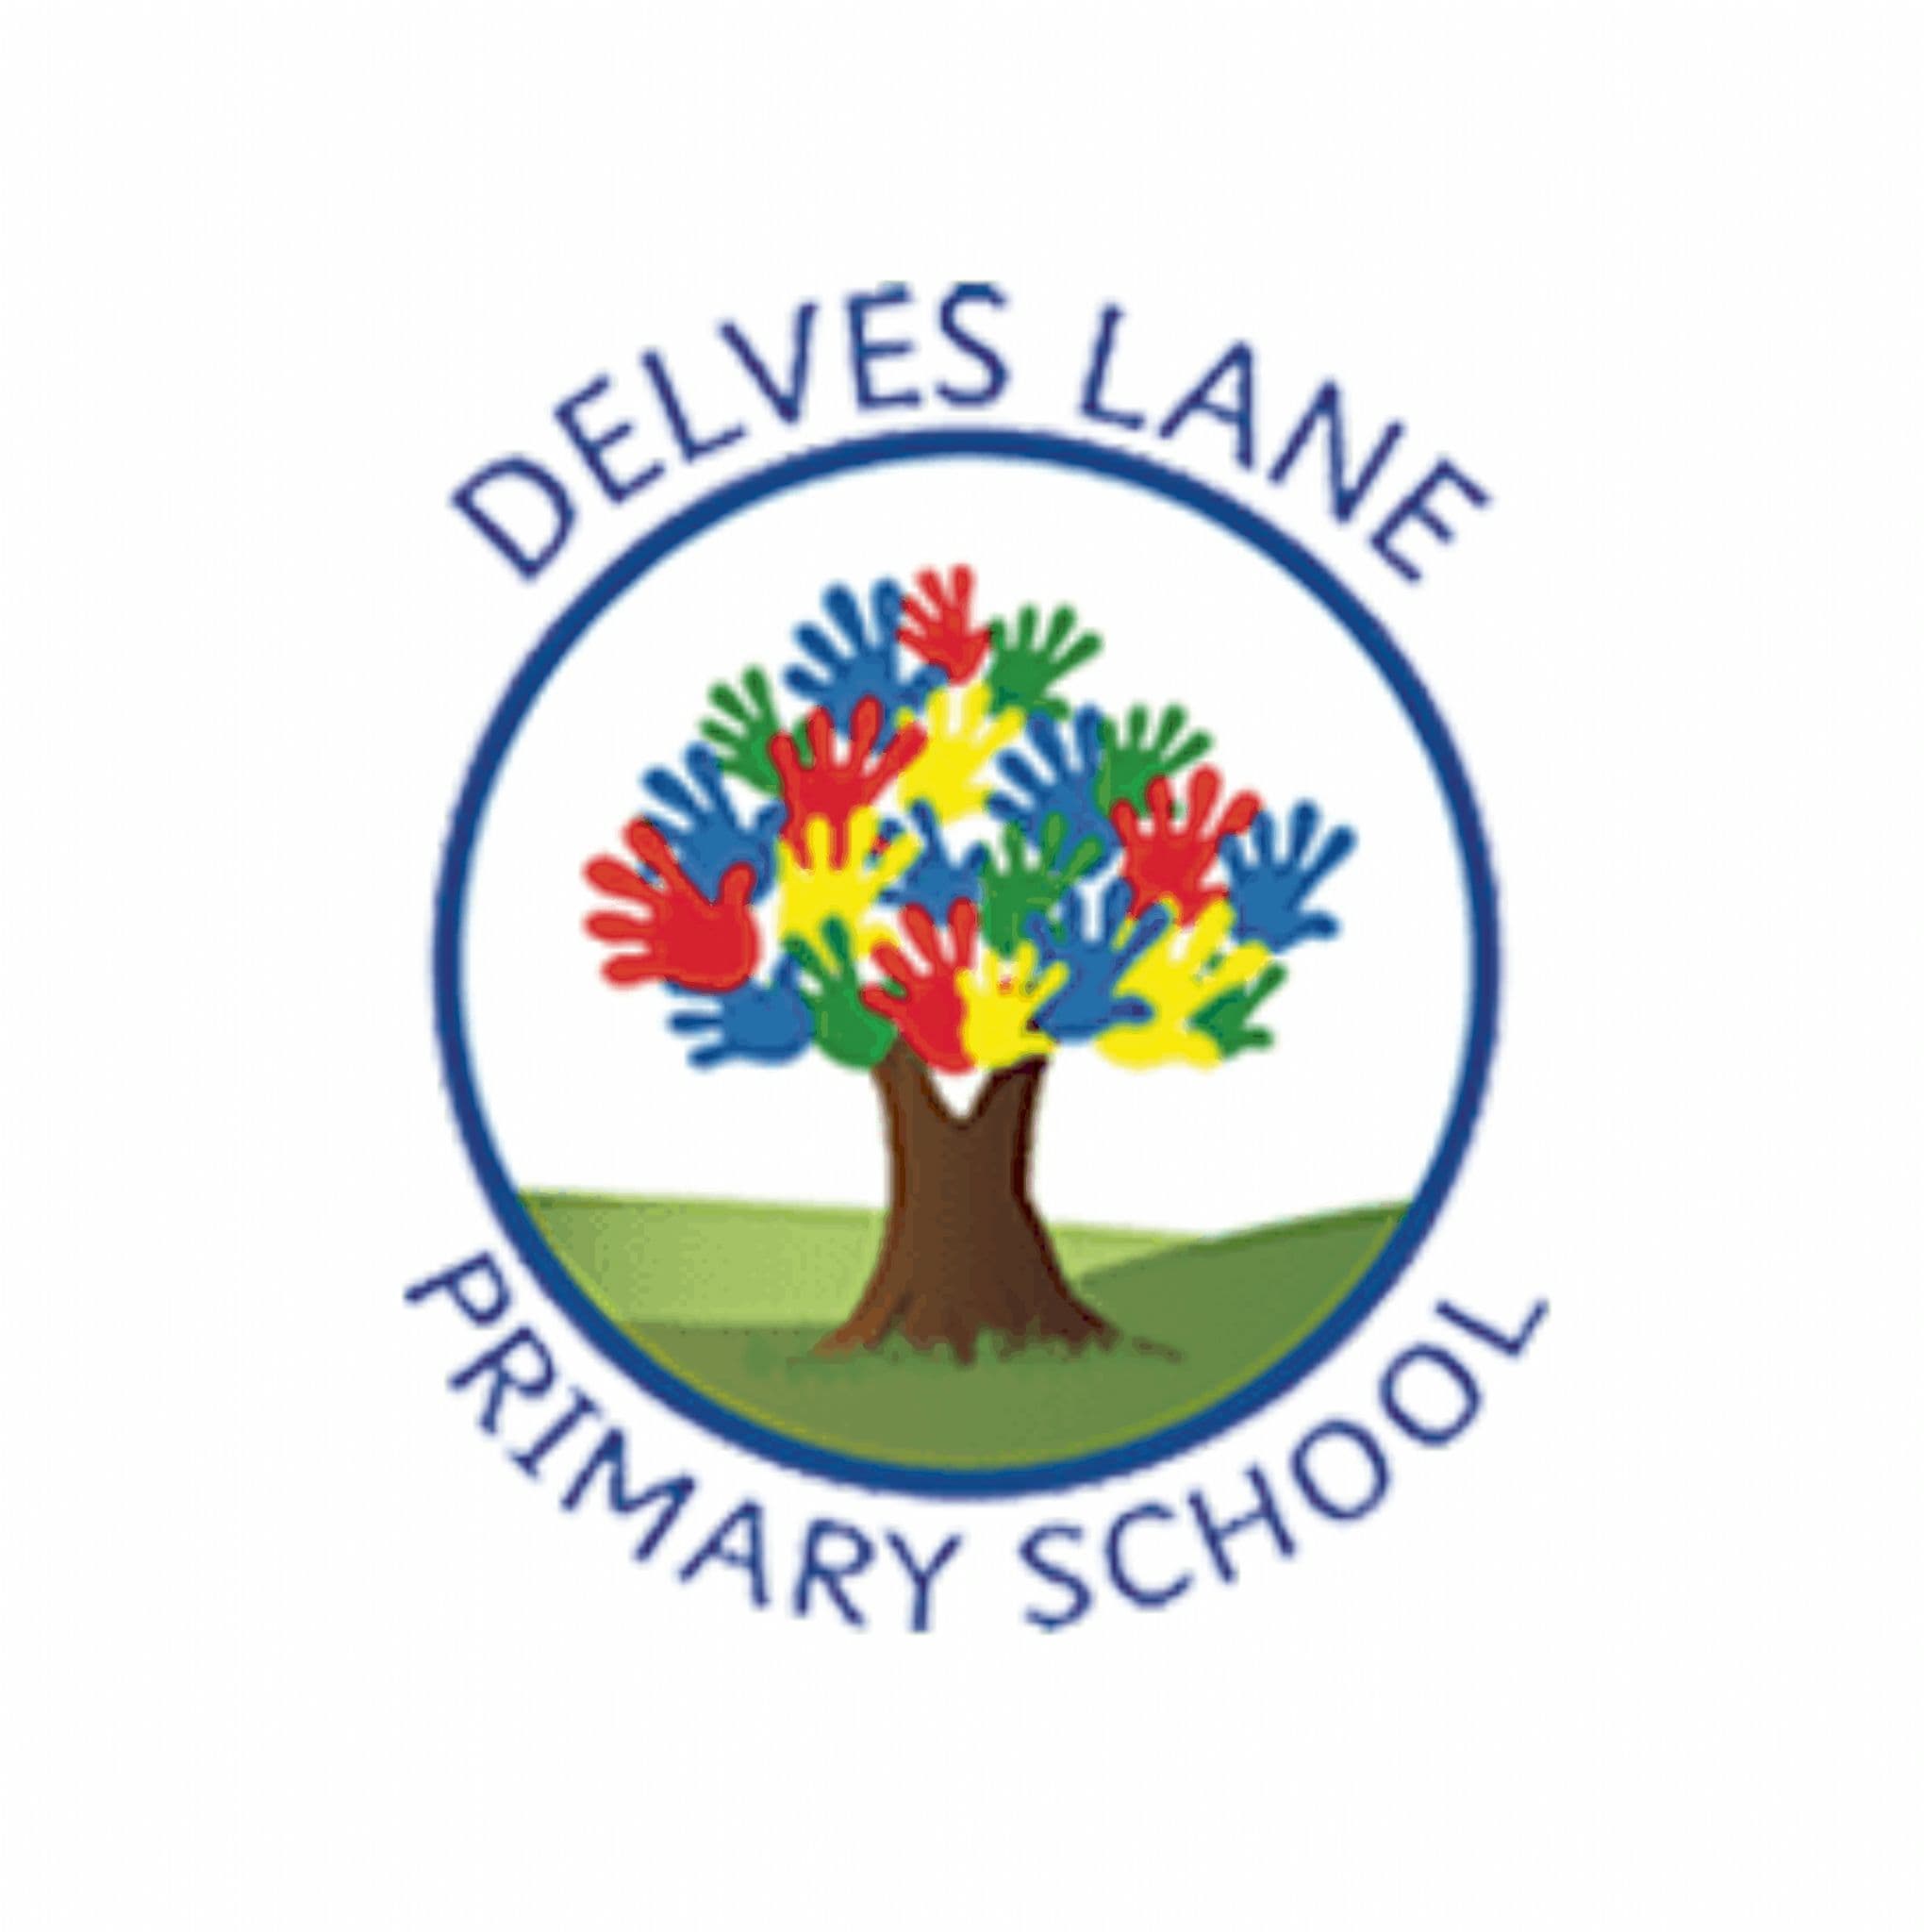 Delves Lane Primary School